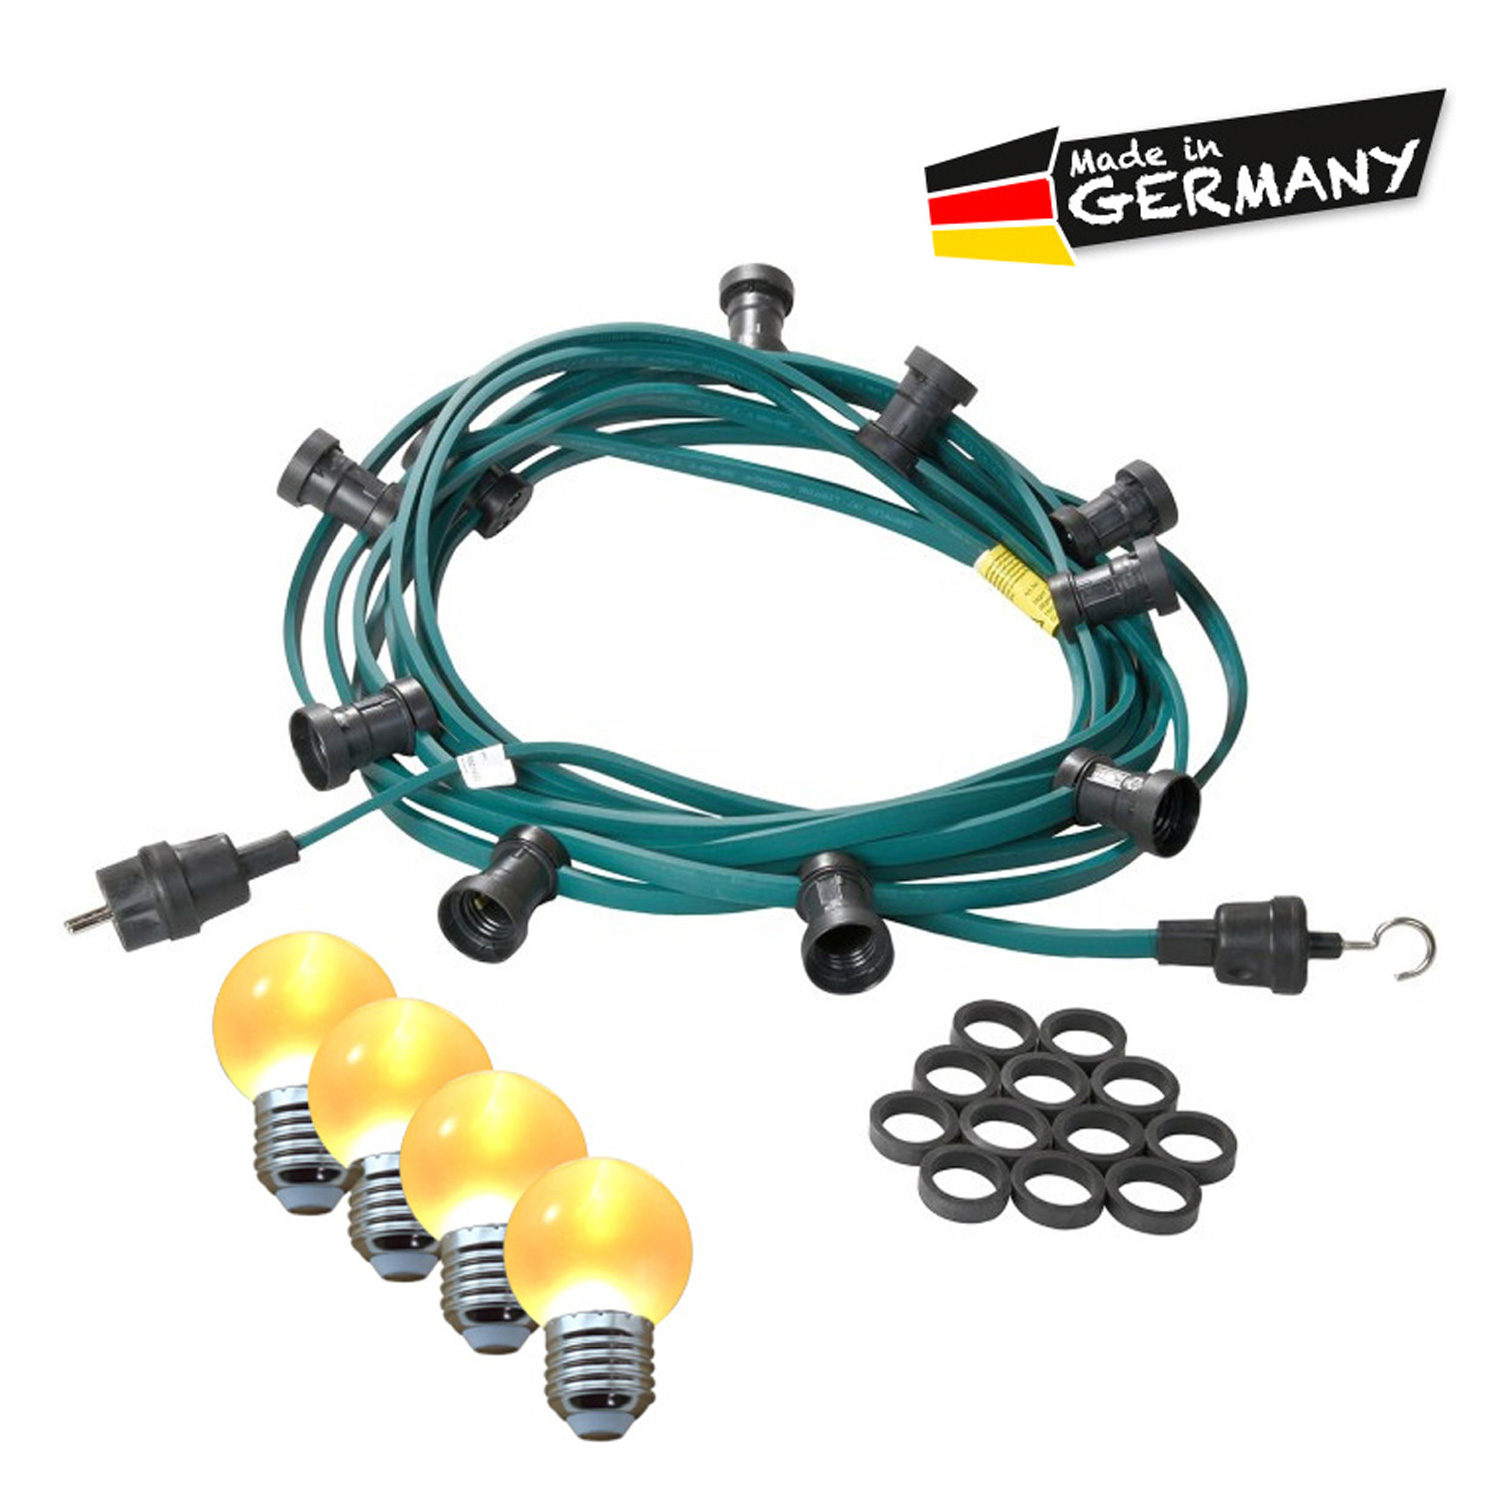 Illu-/Partylichterkette 5m | Außenlichterkette | Made in Germany | 5 x ultra-warmweisse LED Kugeln